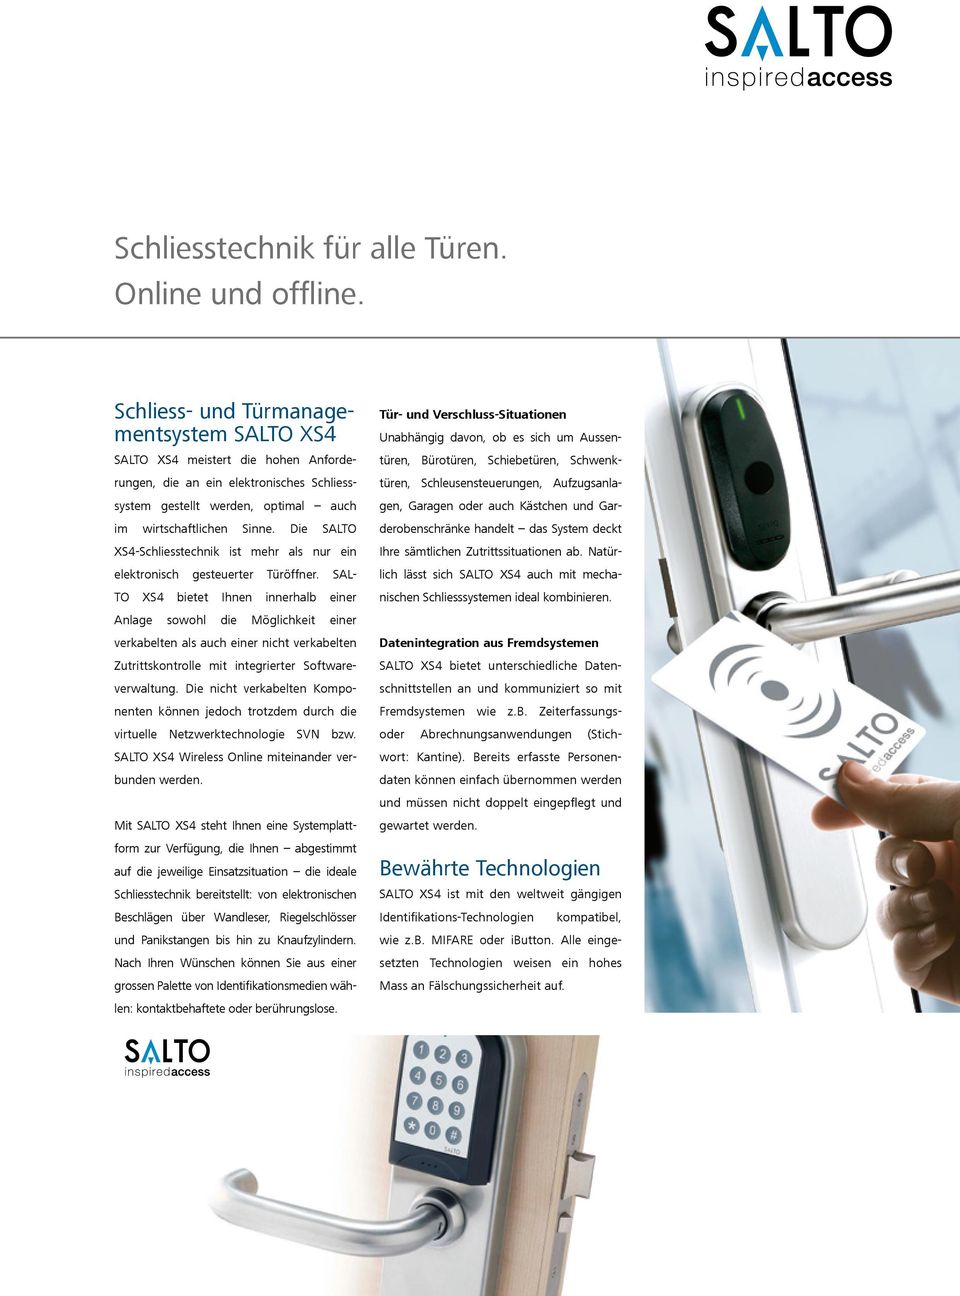 Die SALTO XS4-Schliesstechnik ist mehr als nur ein elektronisch gesteuerter Türöffner.